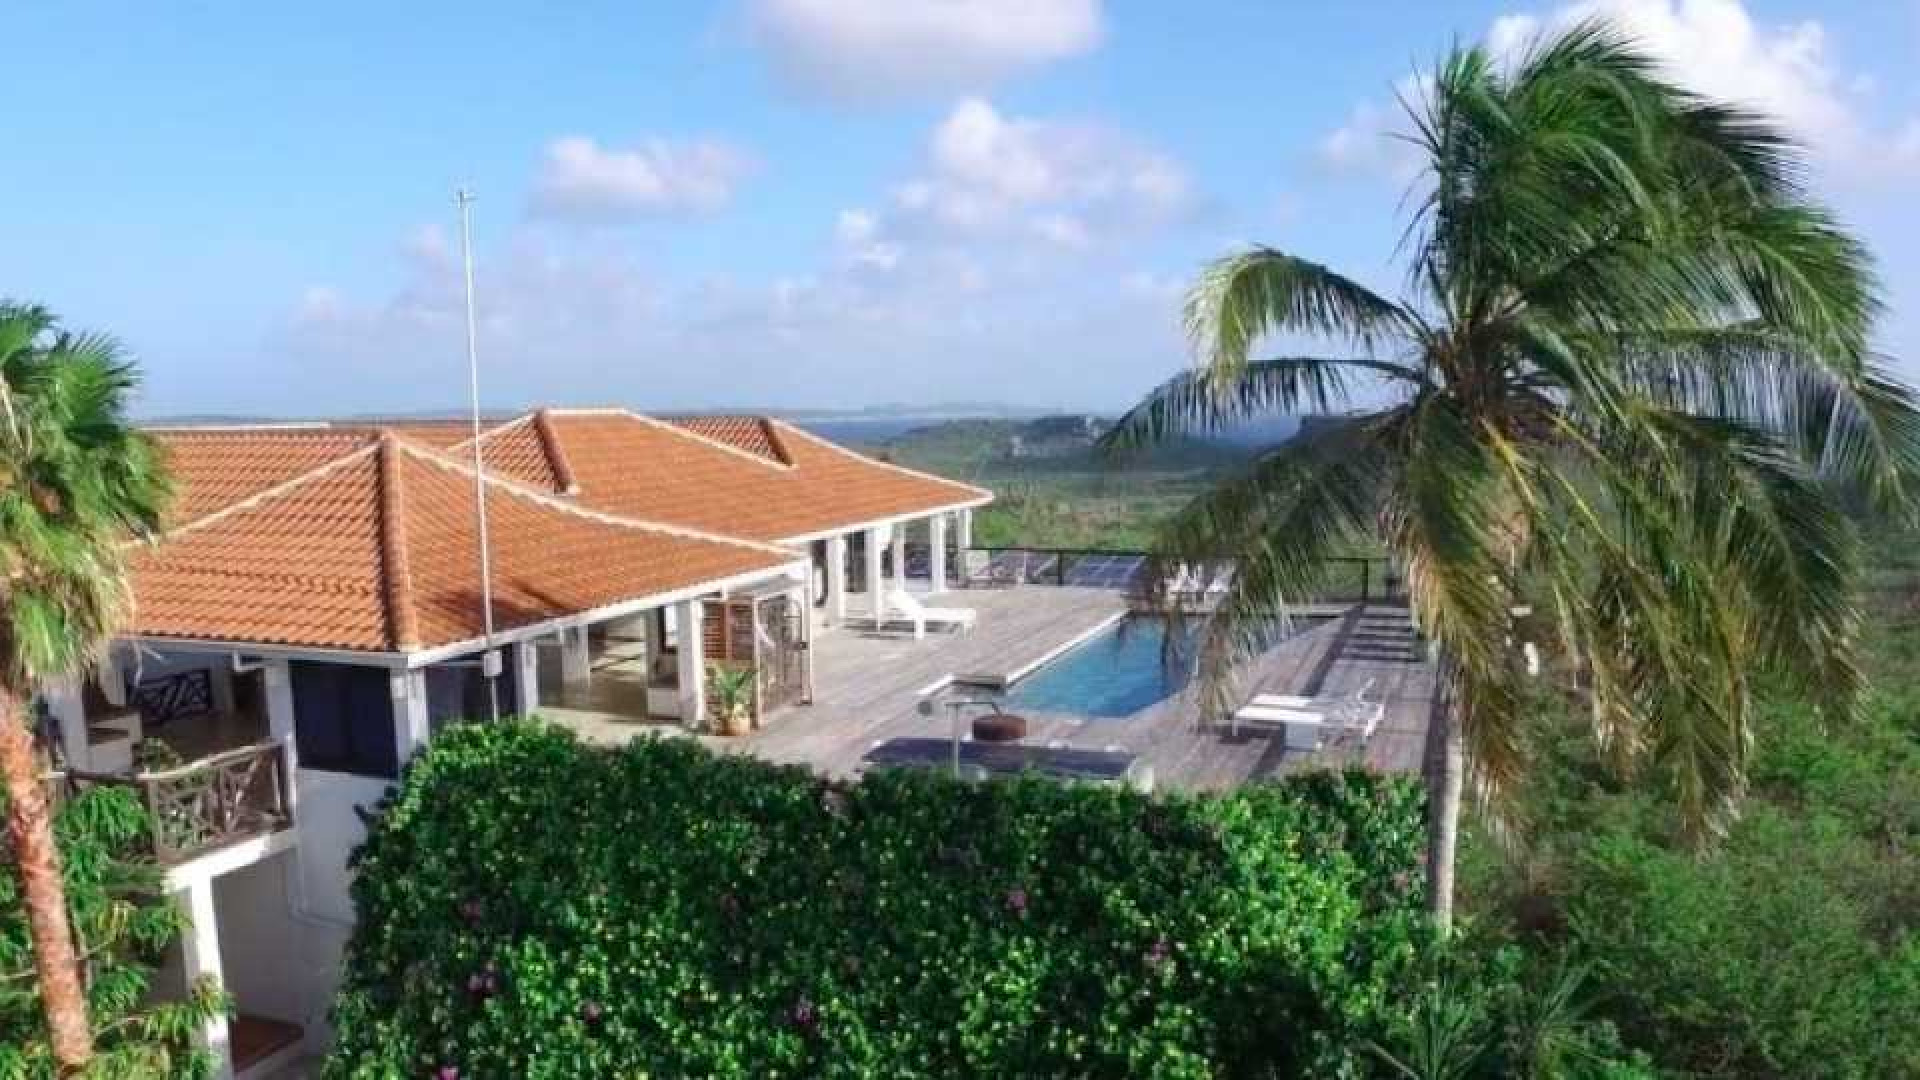 Barry Hay zet zijn miljoenenvilla op Curacao te koop. Zie foto's 2